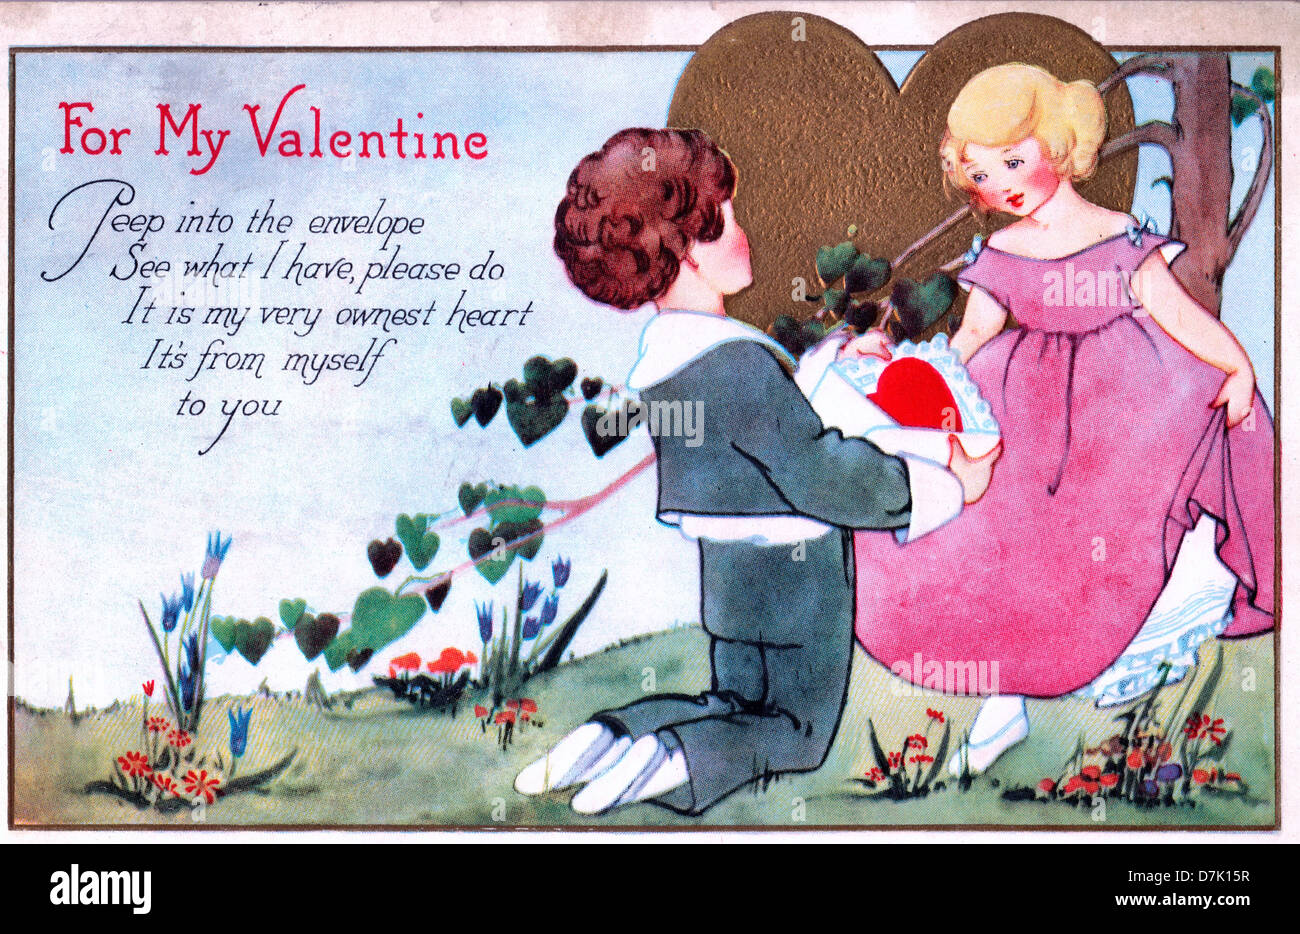 For My Valentine - Peep dans l'enveloppe, voir ce que j'ai, n, c'est mon coeur très ownest. c'est de par moi-même à vous - Vintage Valentine's Day Card Banque D'Images